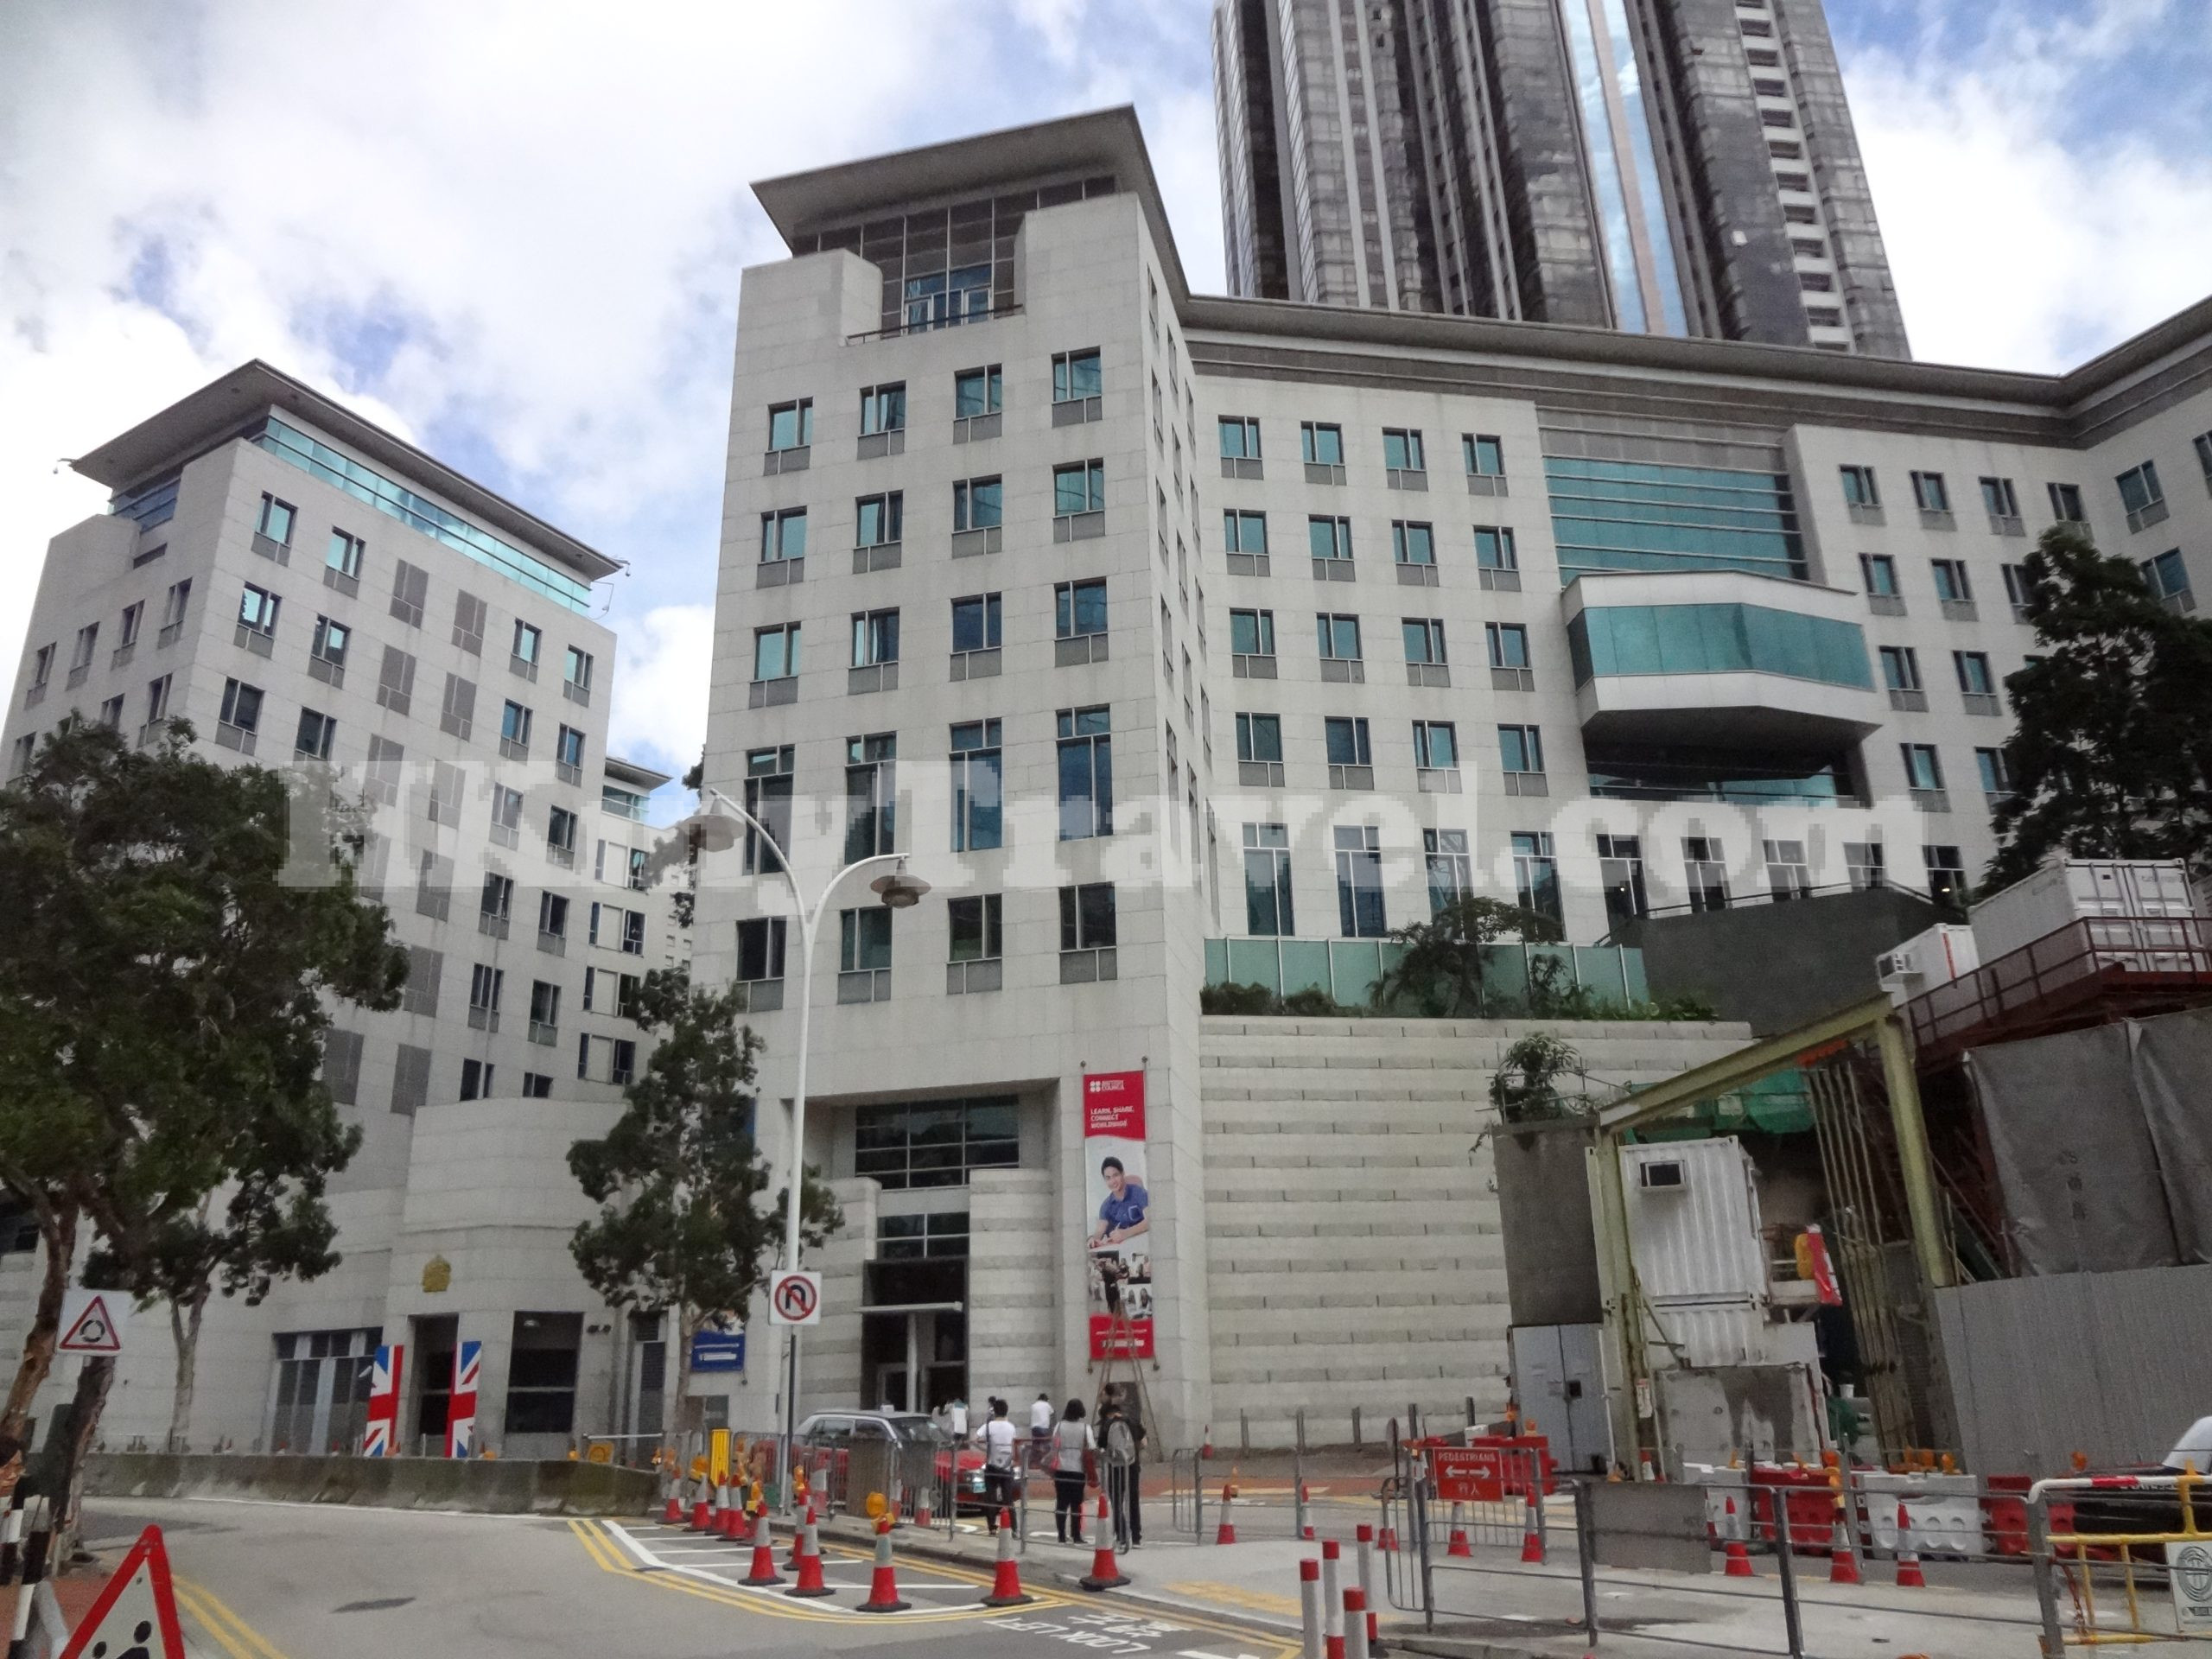 British Consulate General Hong Kong